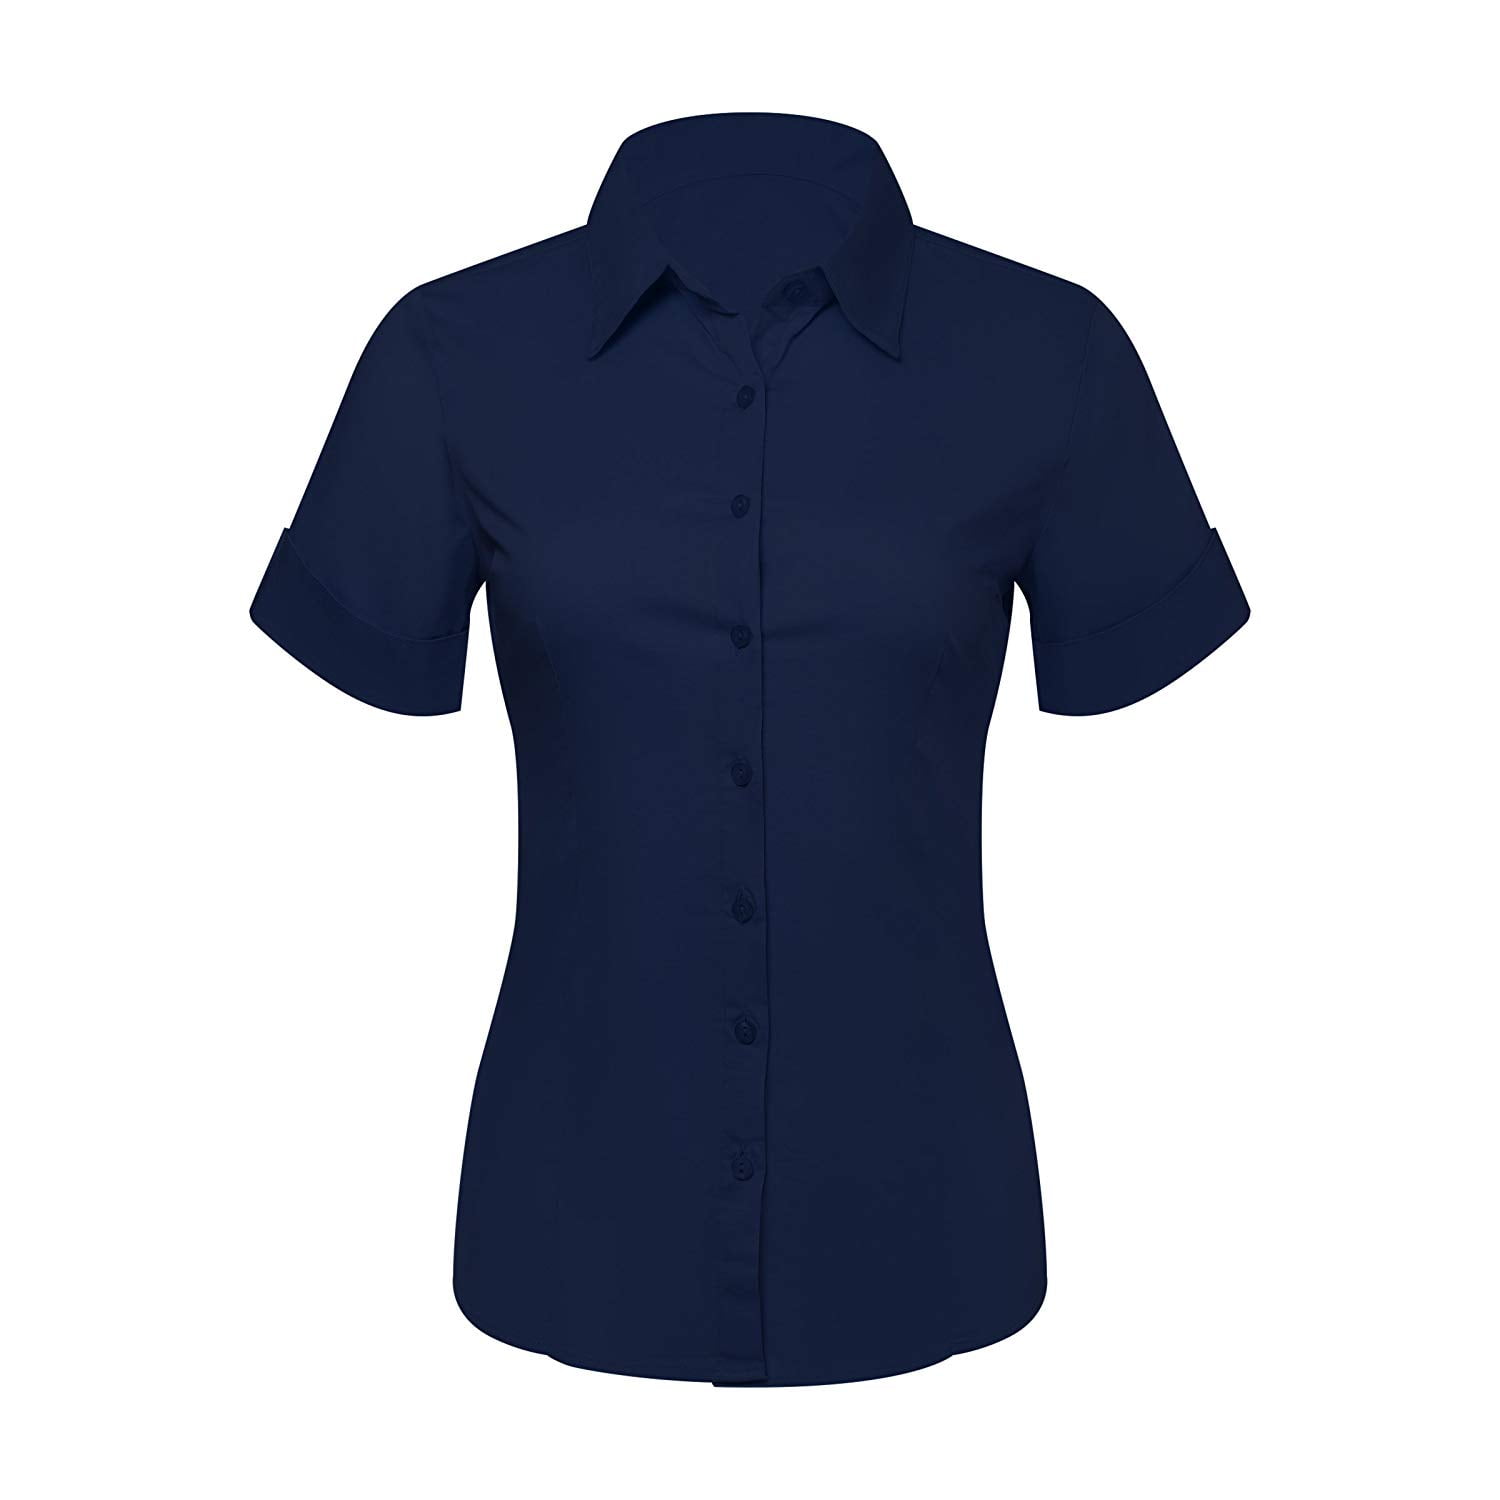 navy blue dress shirt womens